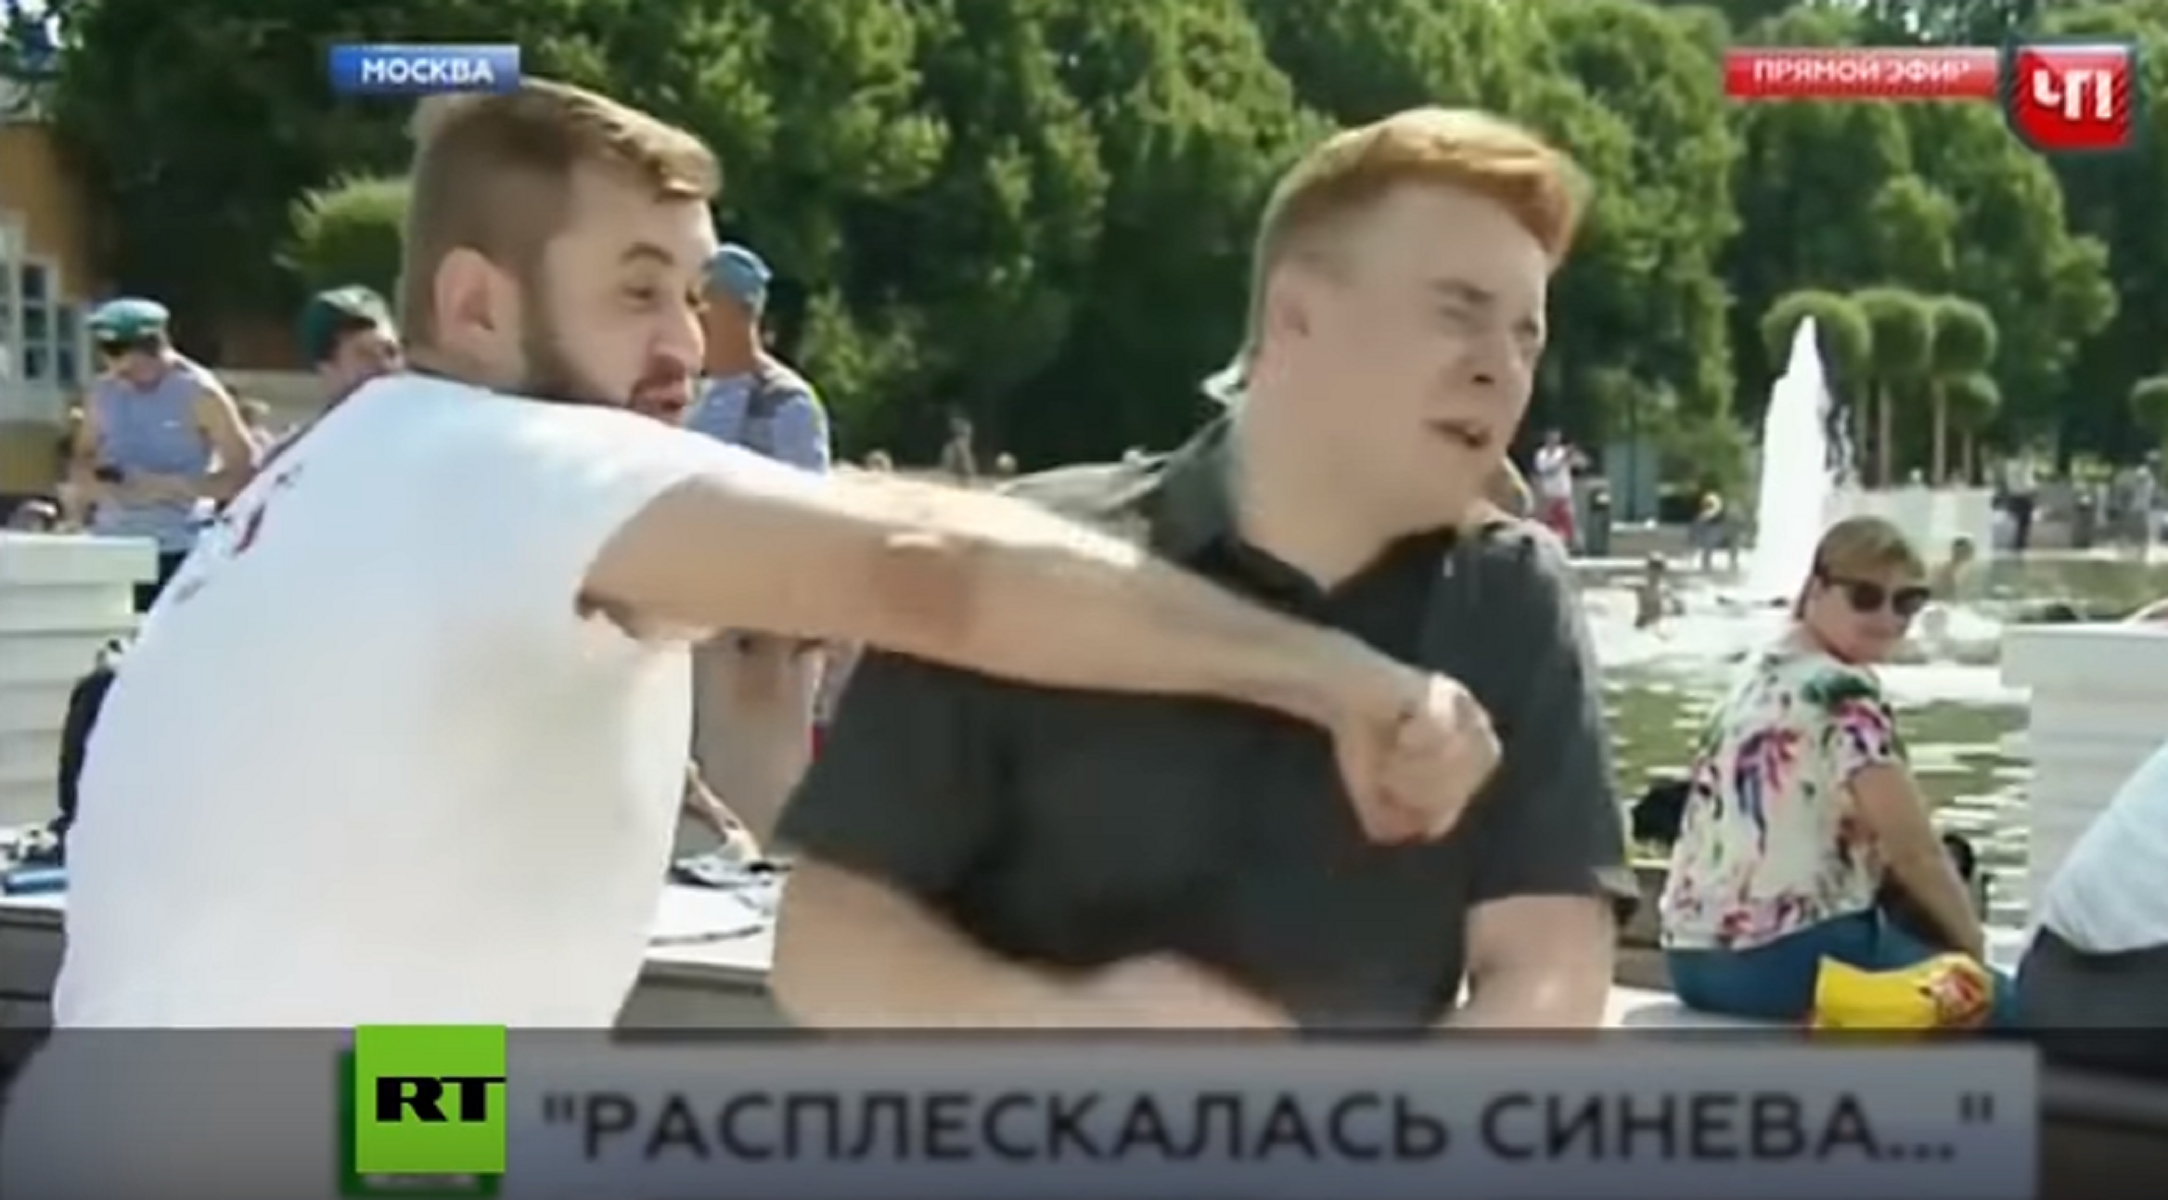 La brutal agressió a un reporter rus en directe